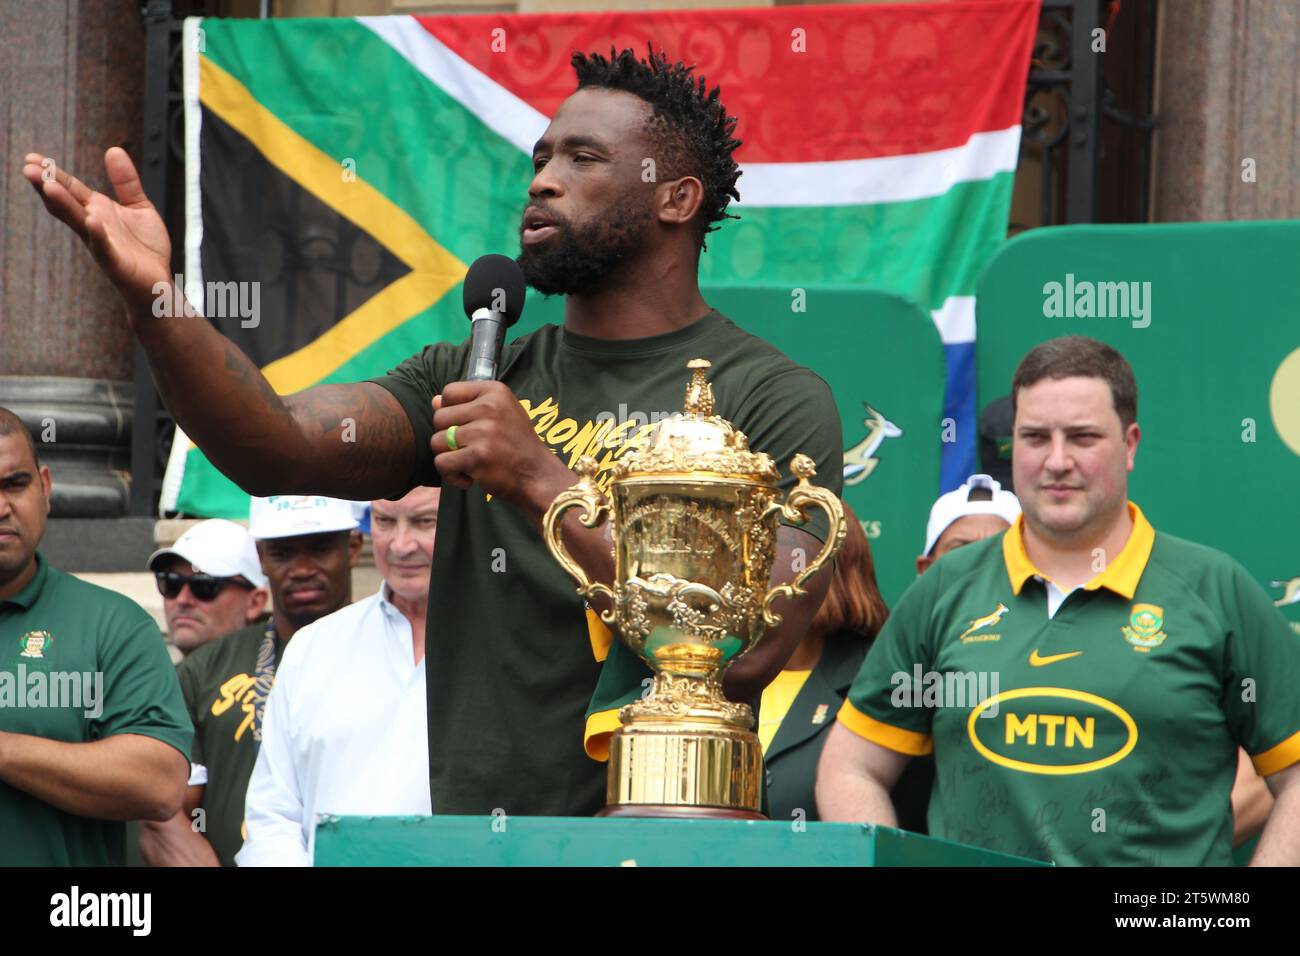 03 novembre 2023 - la foule soutient avec enthousiasme l'équipe de rugby Springbok dans les rues du Cap. L’équipe sud-africaine de rugby est revenue avec la coupe du monde pour la 4e fois. Cela faisait partie de leur tournée victorieuse en Afrique du Sud. Banque D'Images